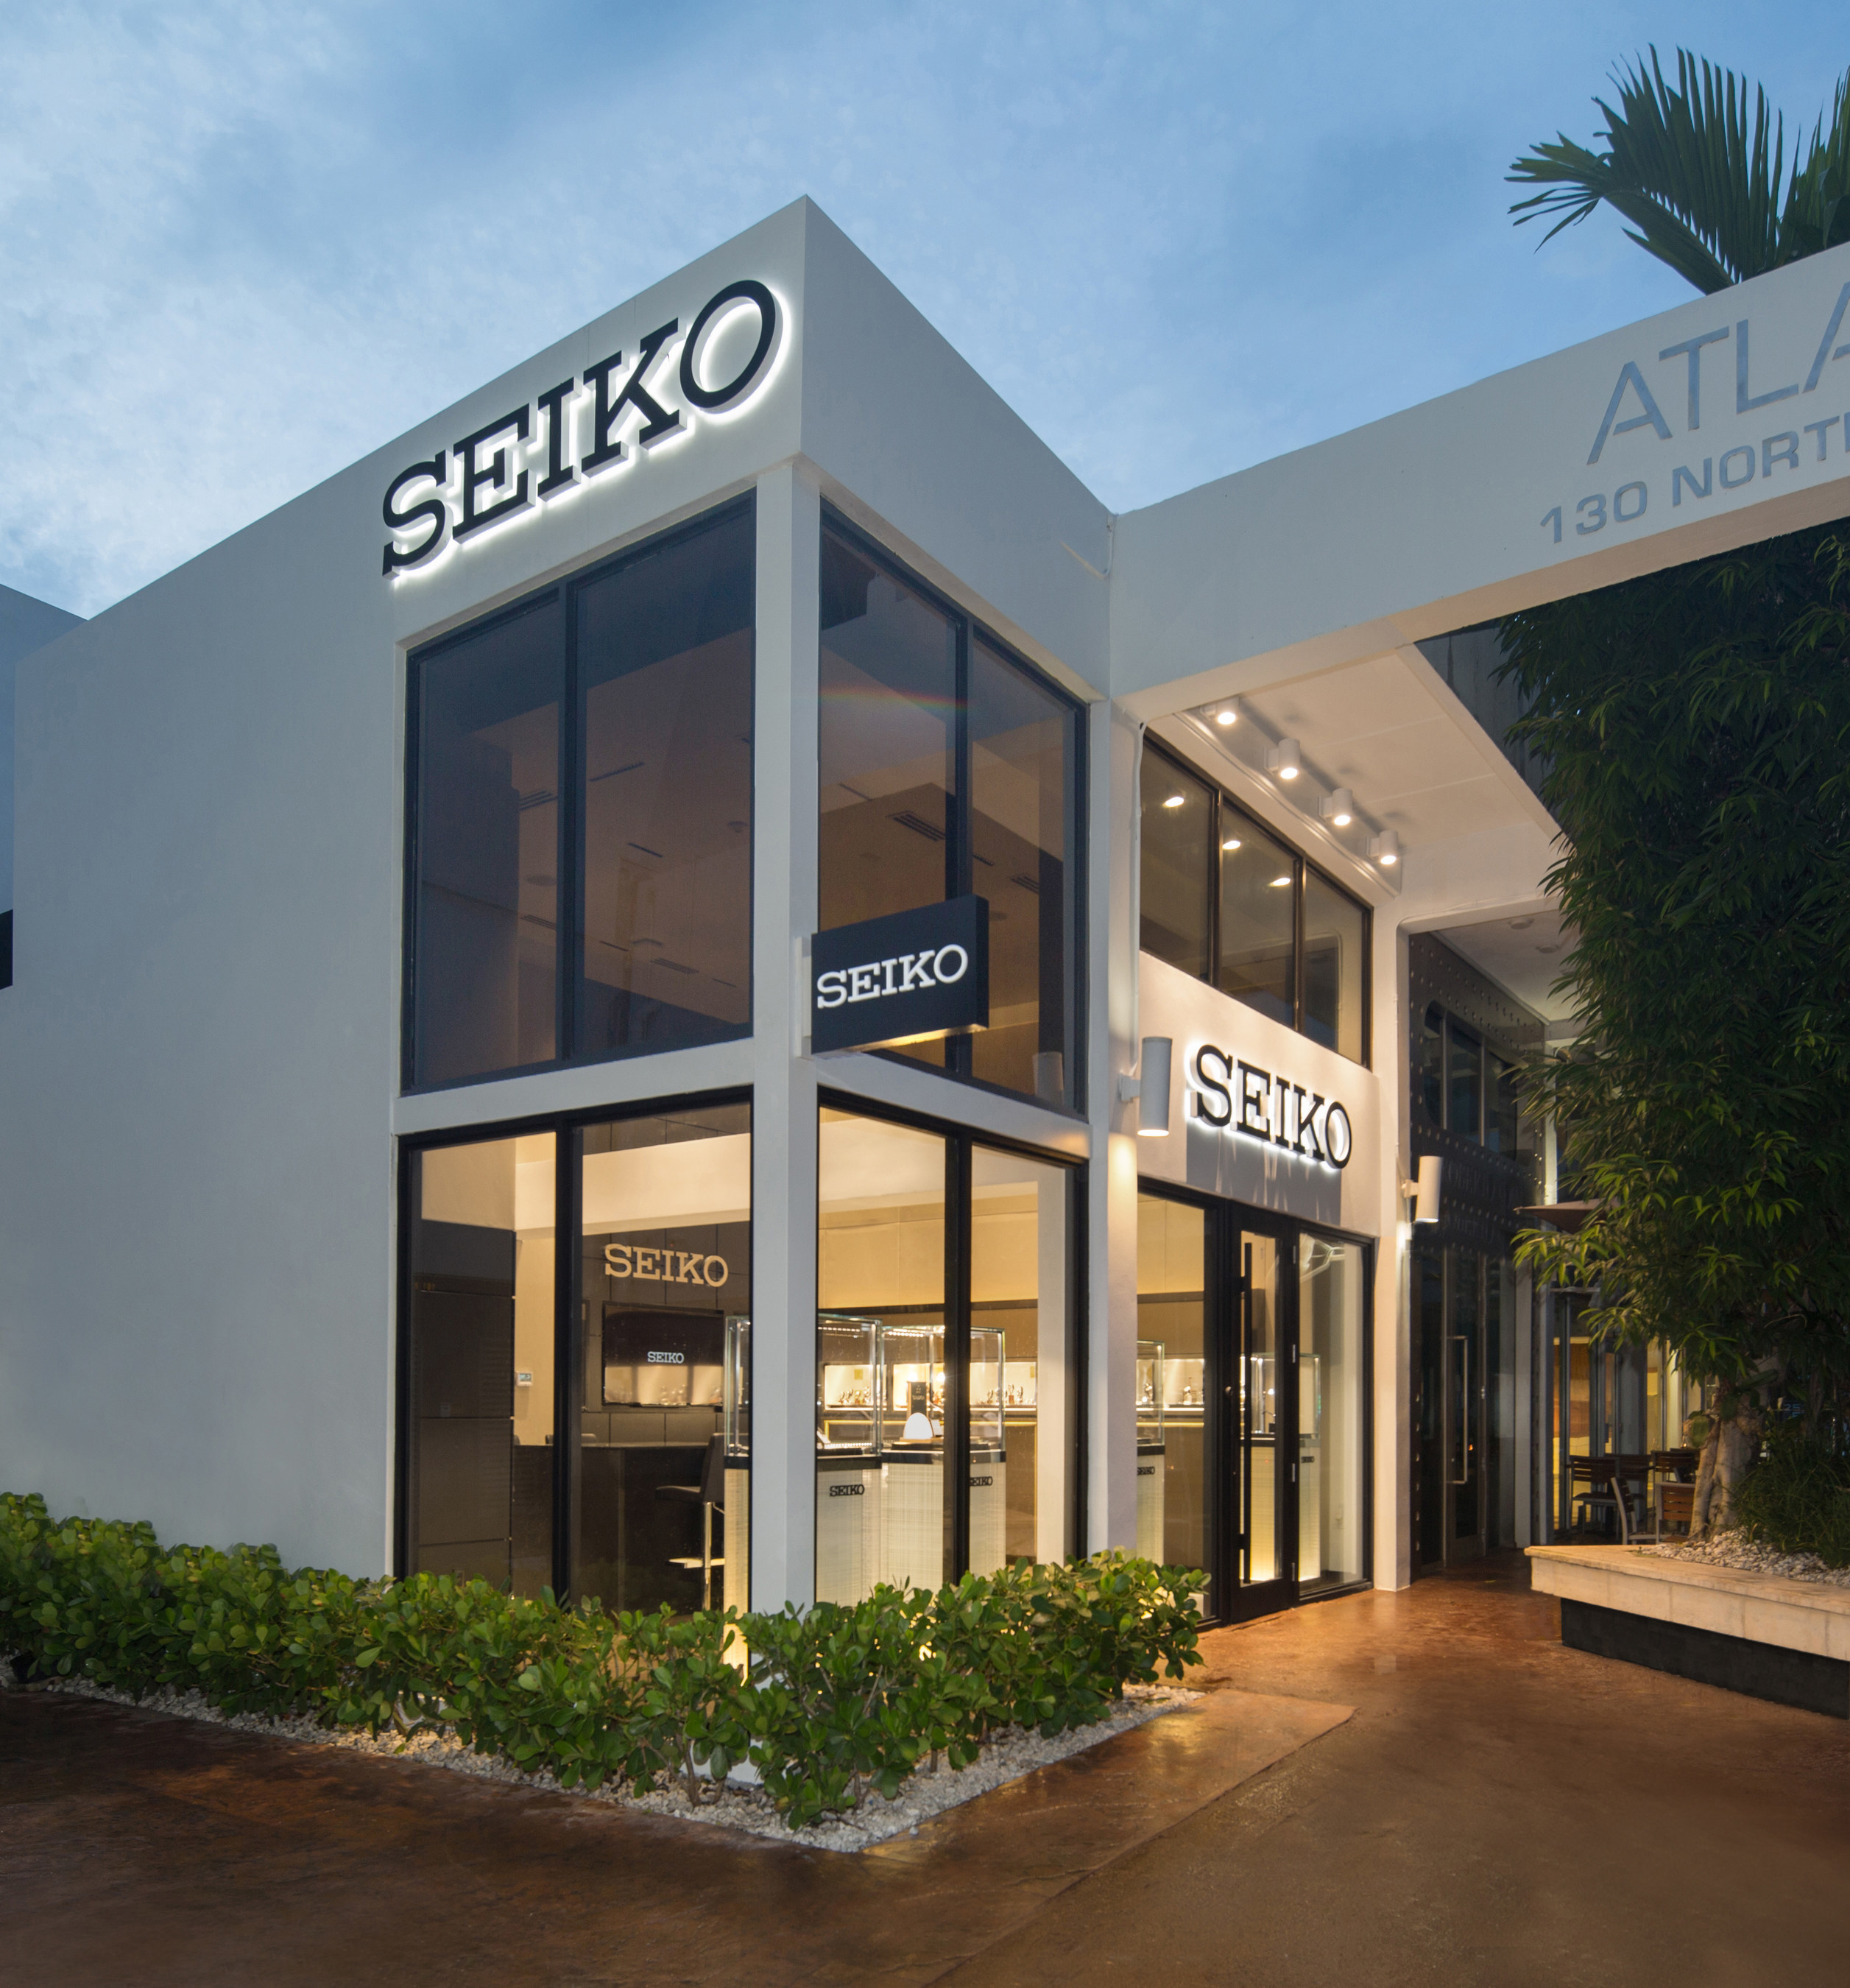 Seiko Celebrates Grand Opening of Miami Boutique